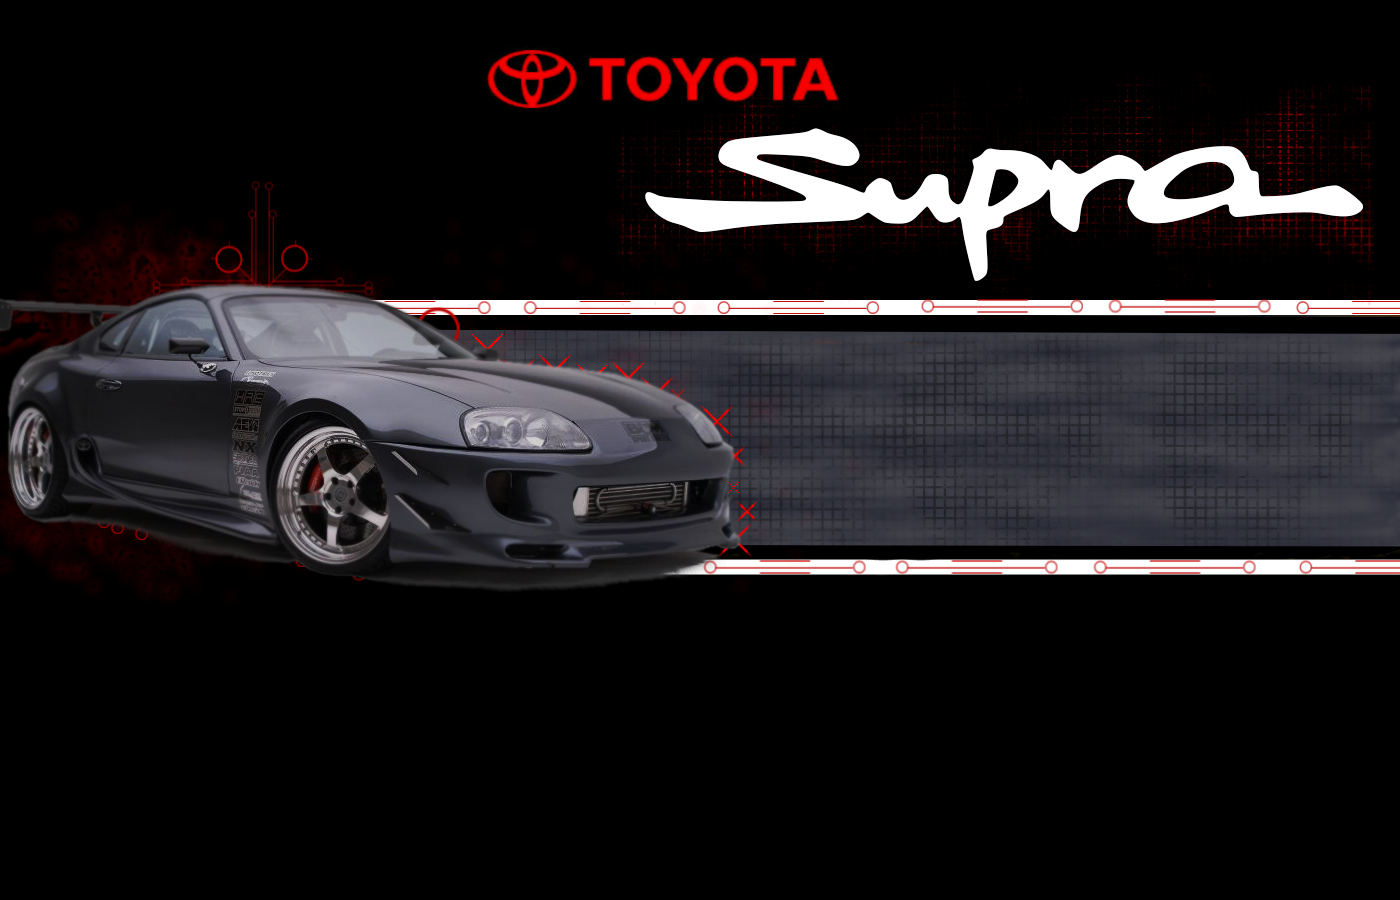 Toyota Supra MK3 logo vinyl sticker | eBay